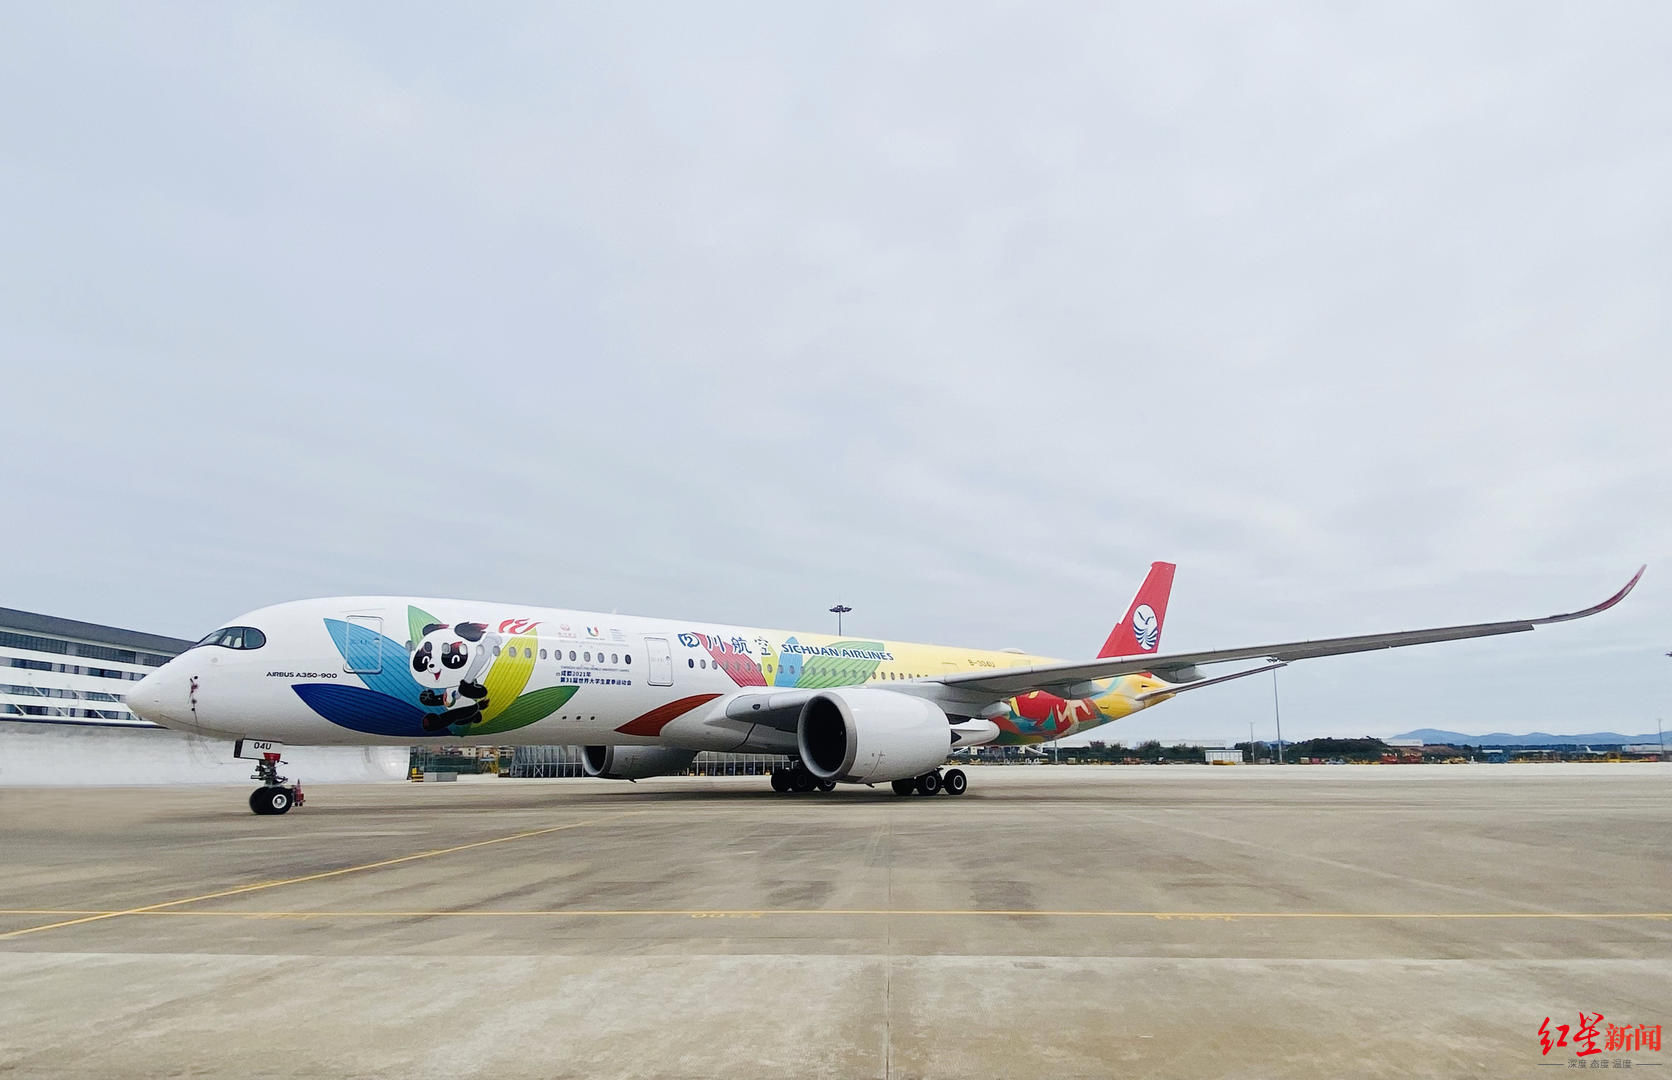 大运号|川航A350“大运号”主题涂装飞机亮相